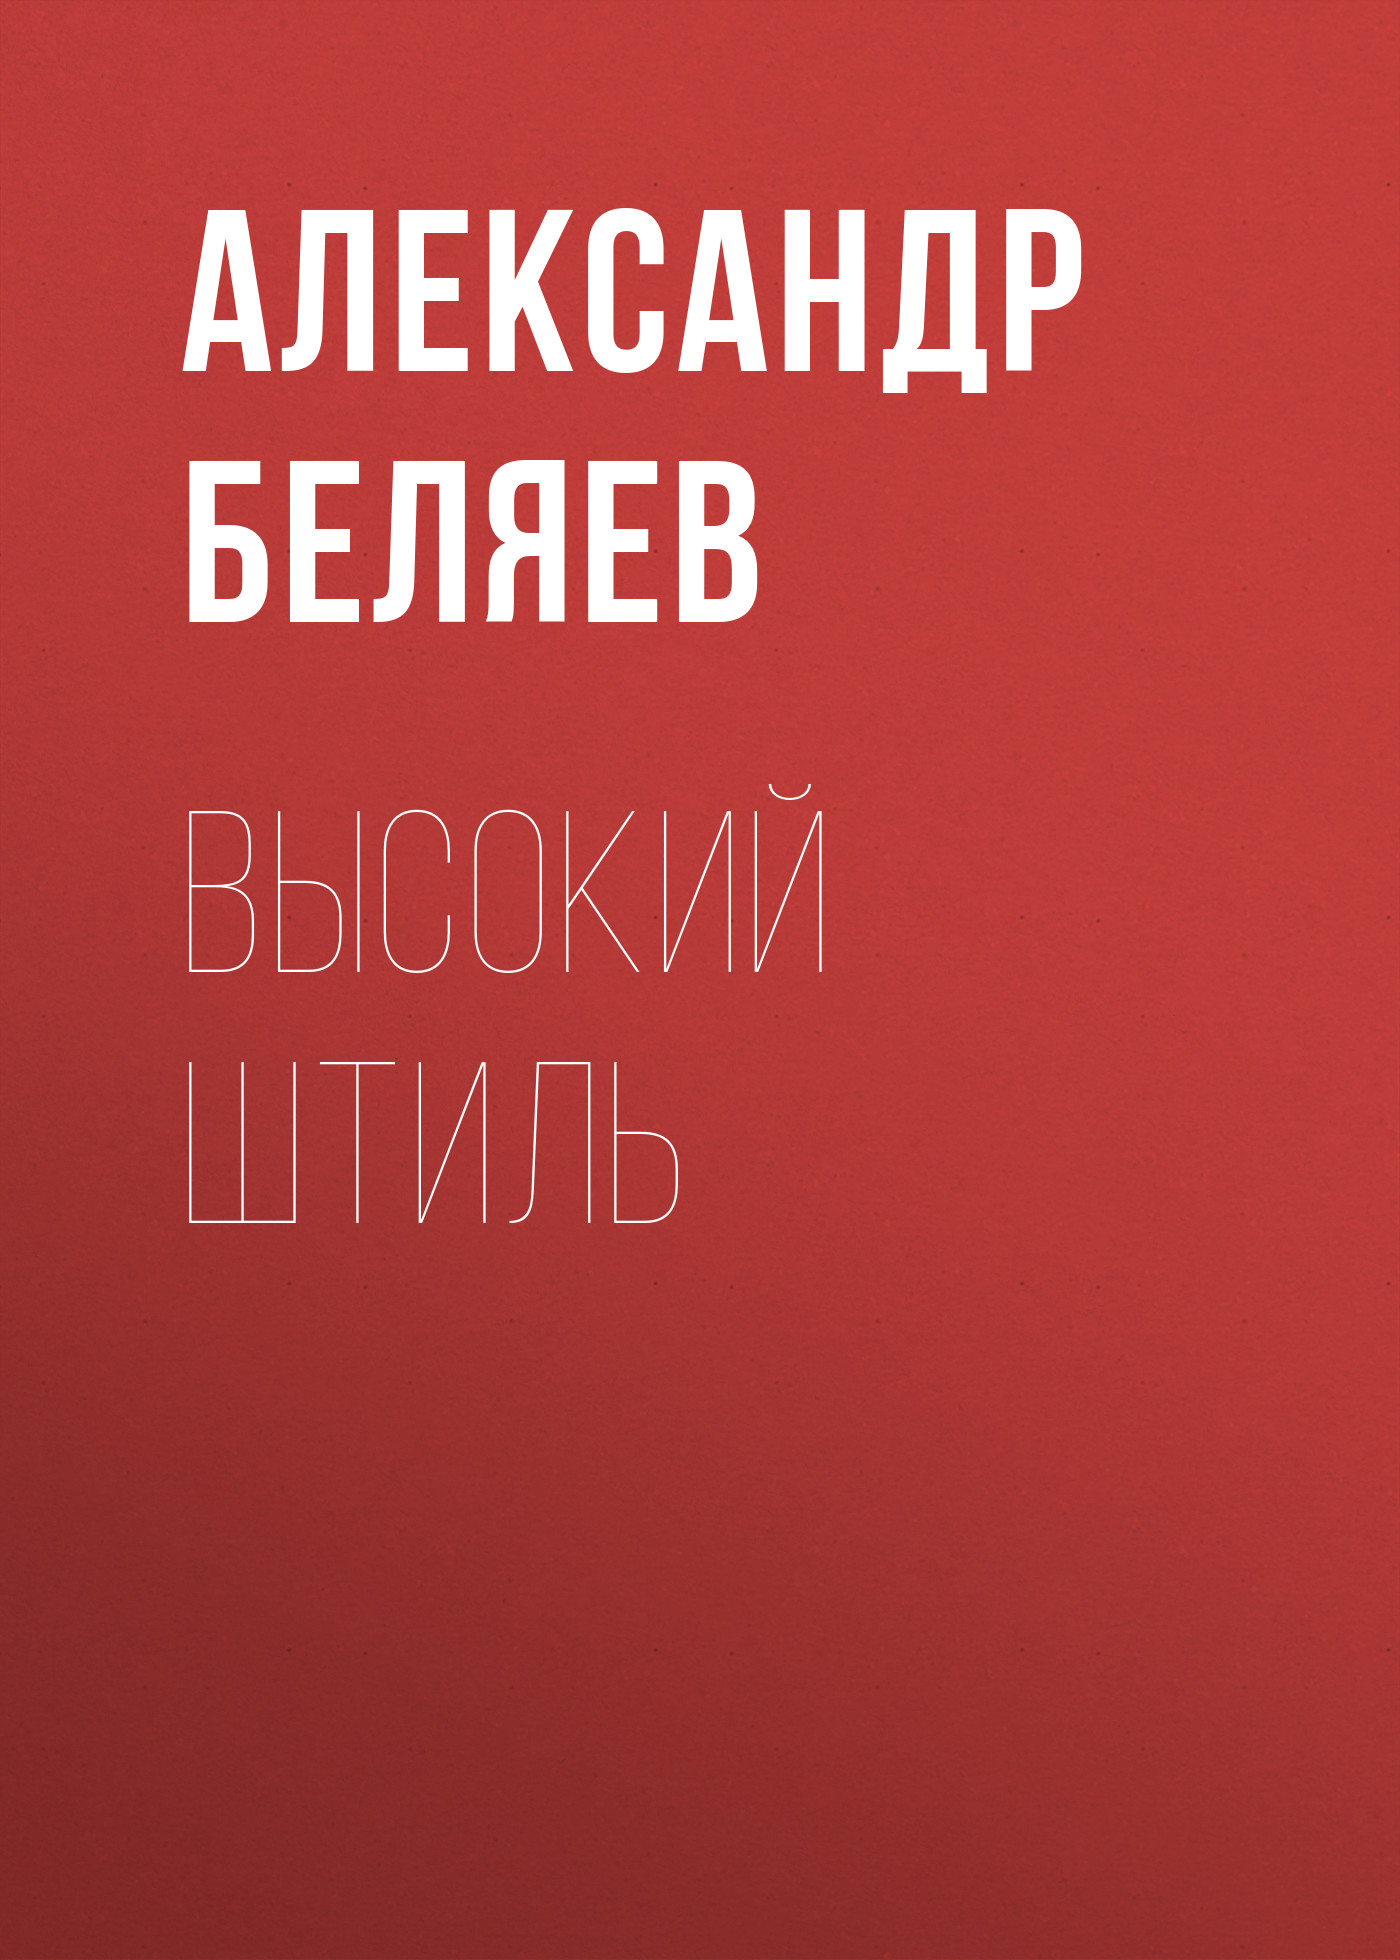 Книга Высокий штиль из серии , созданная Александр Беляев, может относится к жанру Критика. Стоимость электронной книги Высокий штиль с идентификатором 24921605 составляет 5.99 руб.